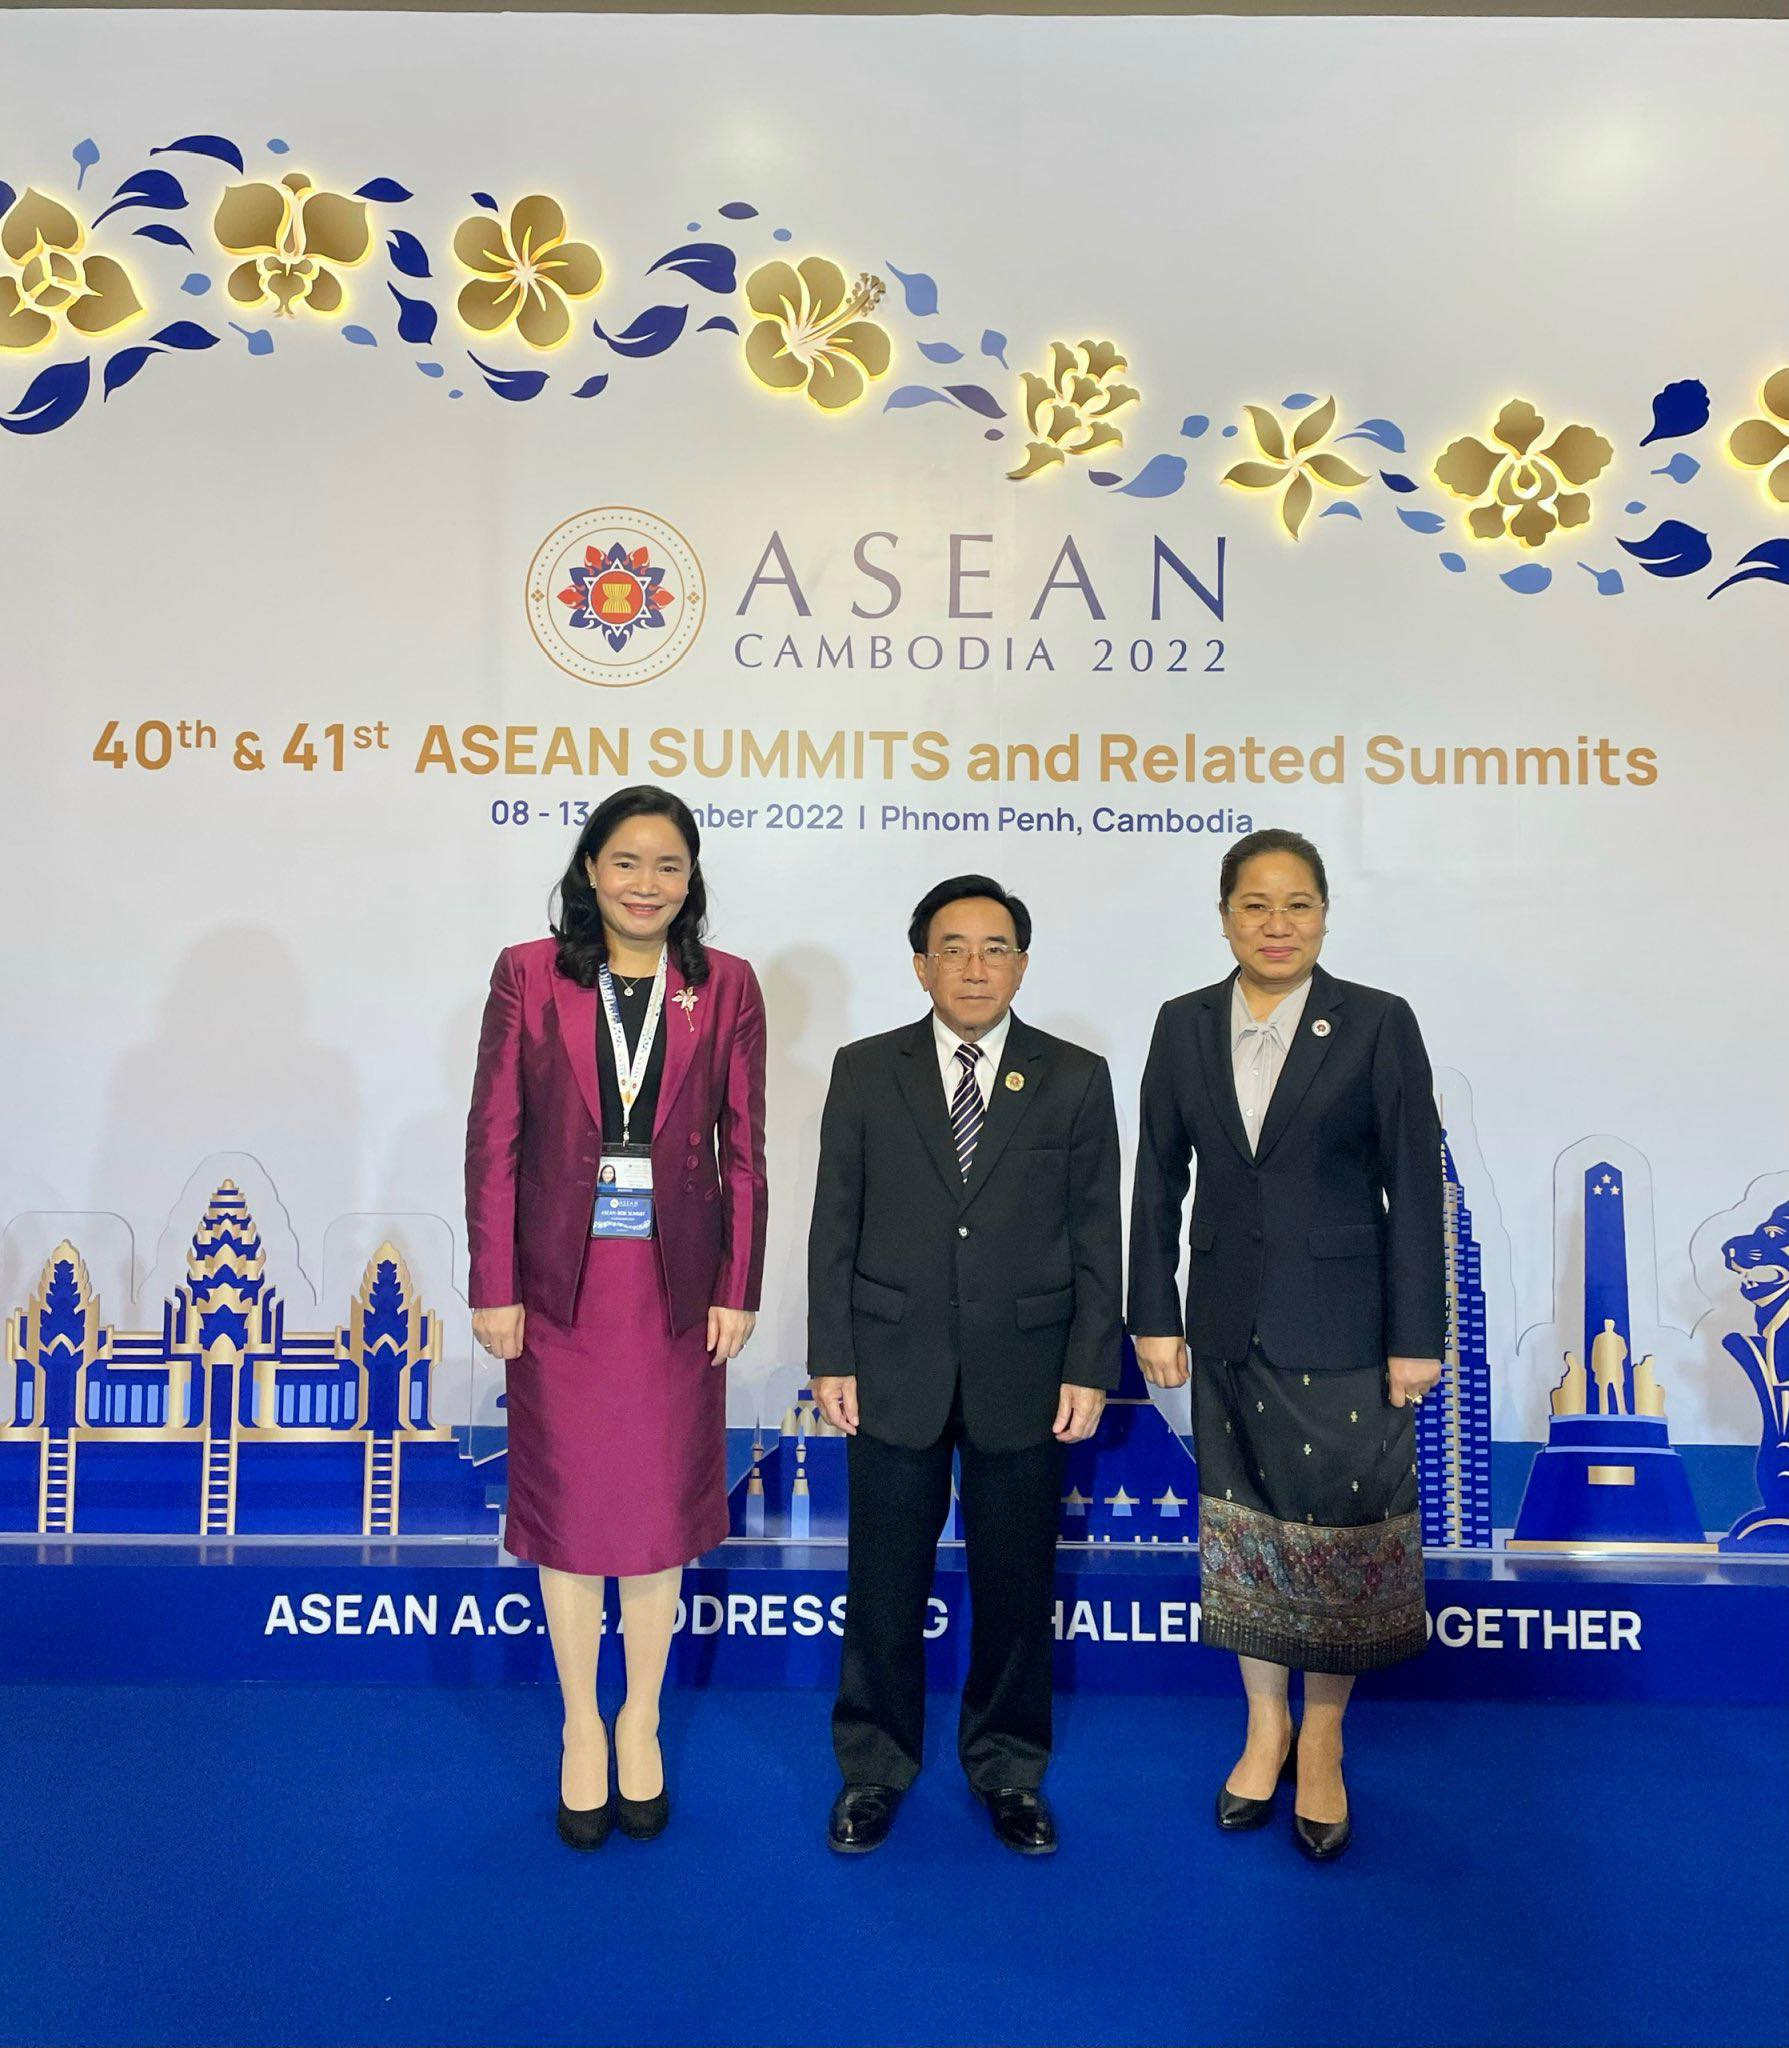 Tiến độ triển khai Tầm nhìn Cộng đồng ASEAN 2025 trên cả 3 trụ cột đạt nhiều kết quả khả quan - Ảnh 4.